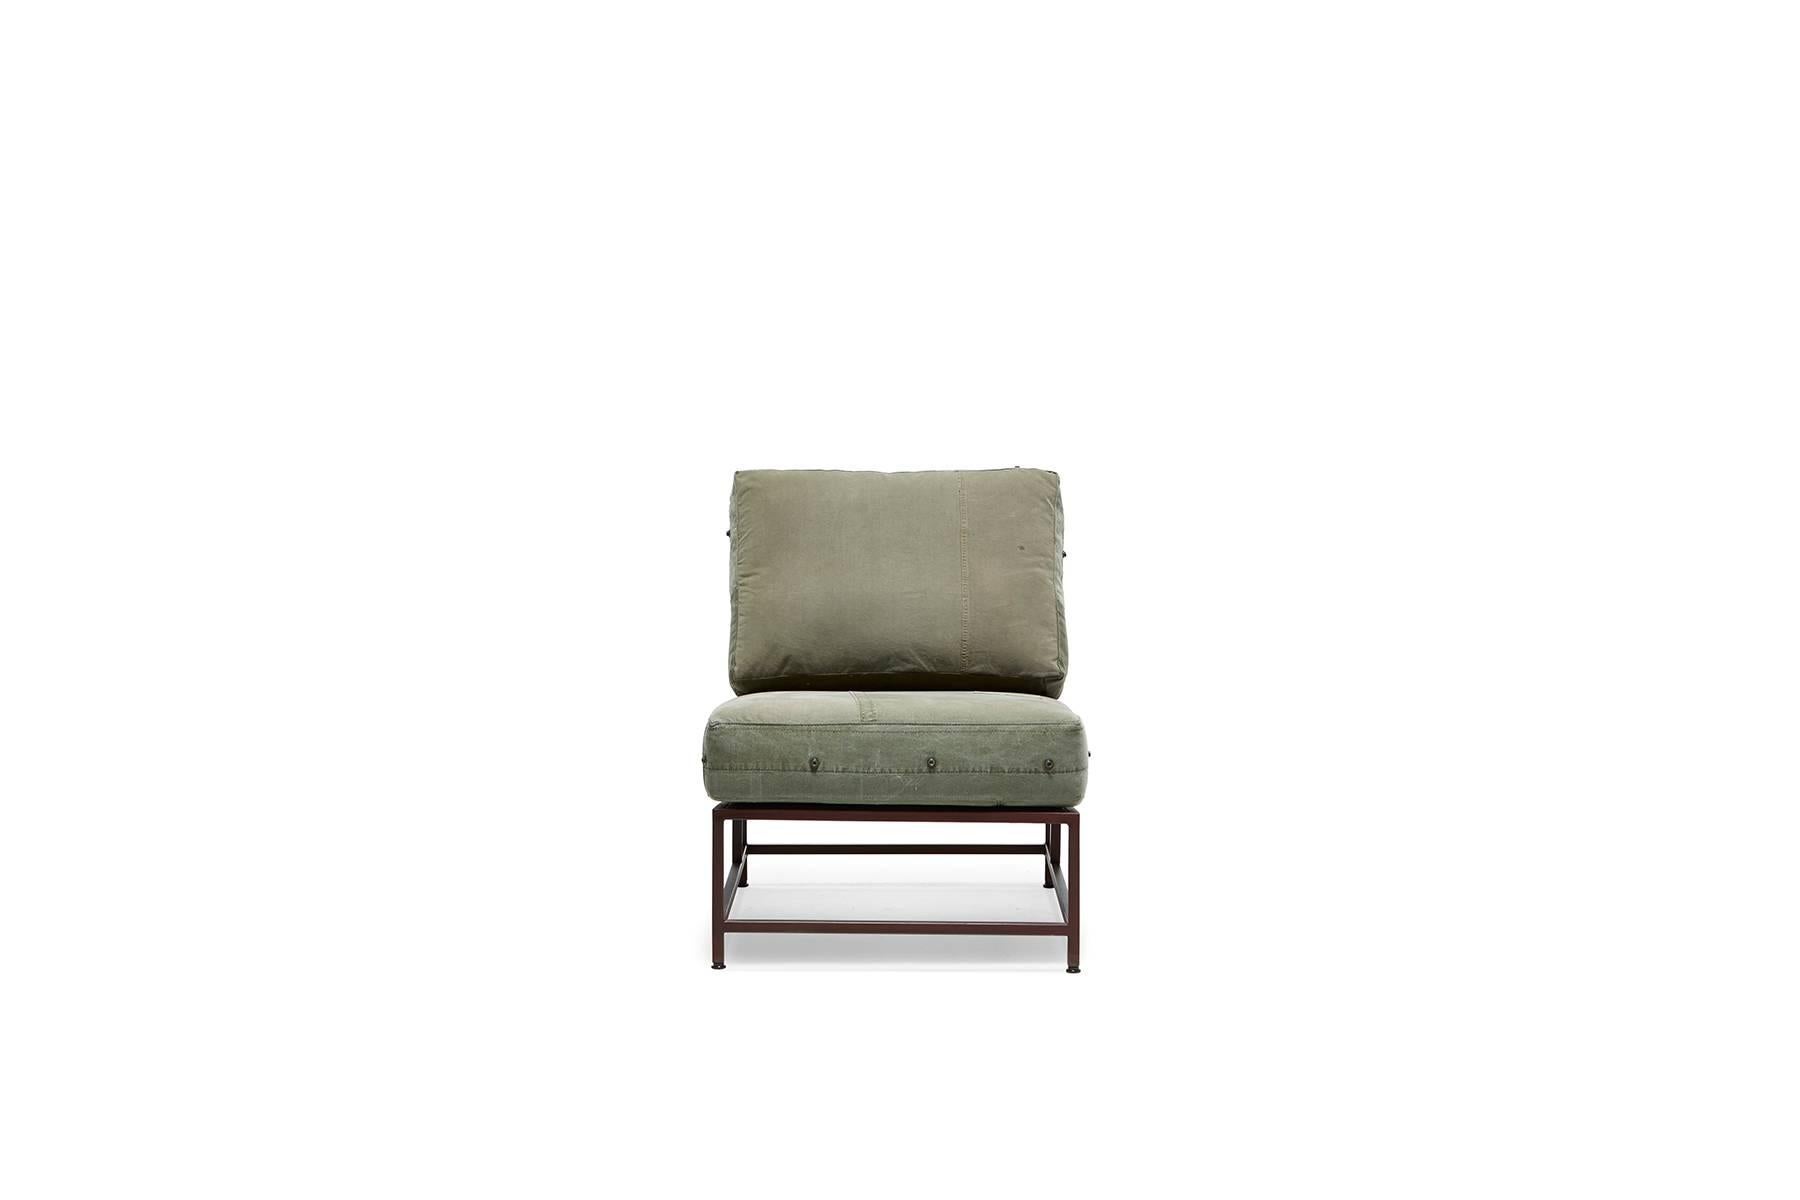 Créée en 2011, il s'agit de la version originale de la chaise Inheritance. Inspirée par l'histoire inhérente aux matériaux vintage de l'armée américaine, associée à un concept de design minimal et dépouillé, cette collection de meubles est la